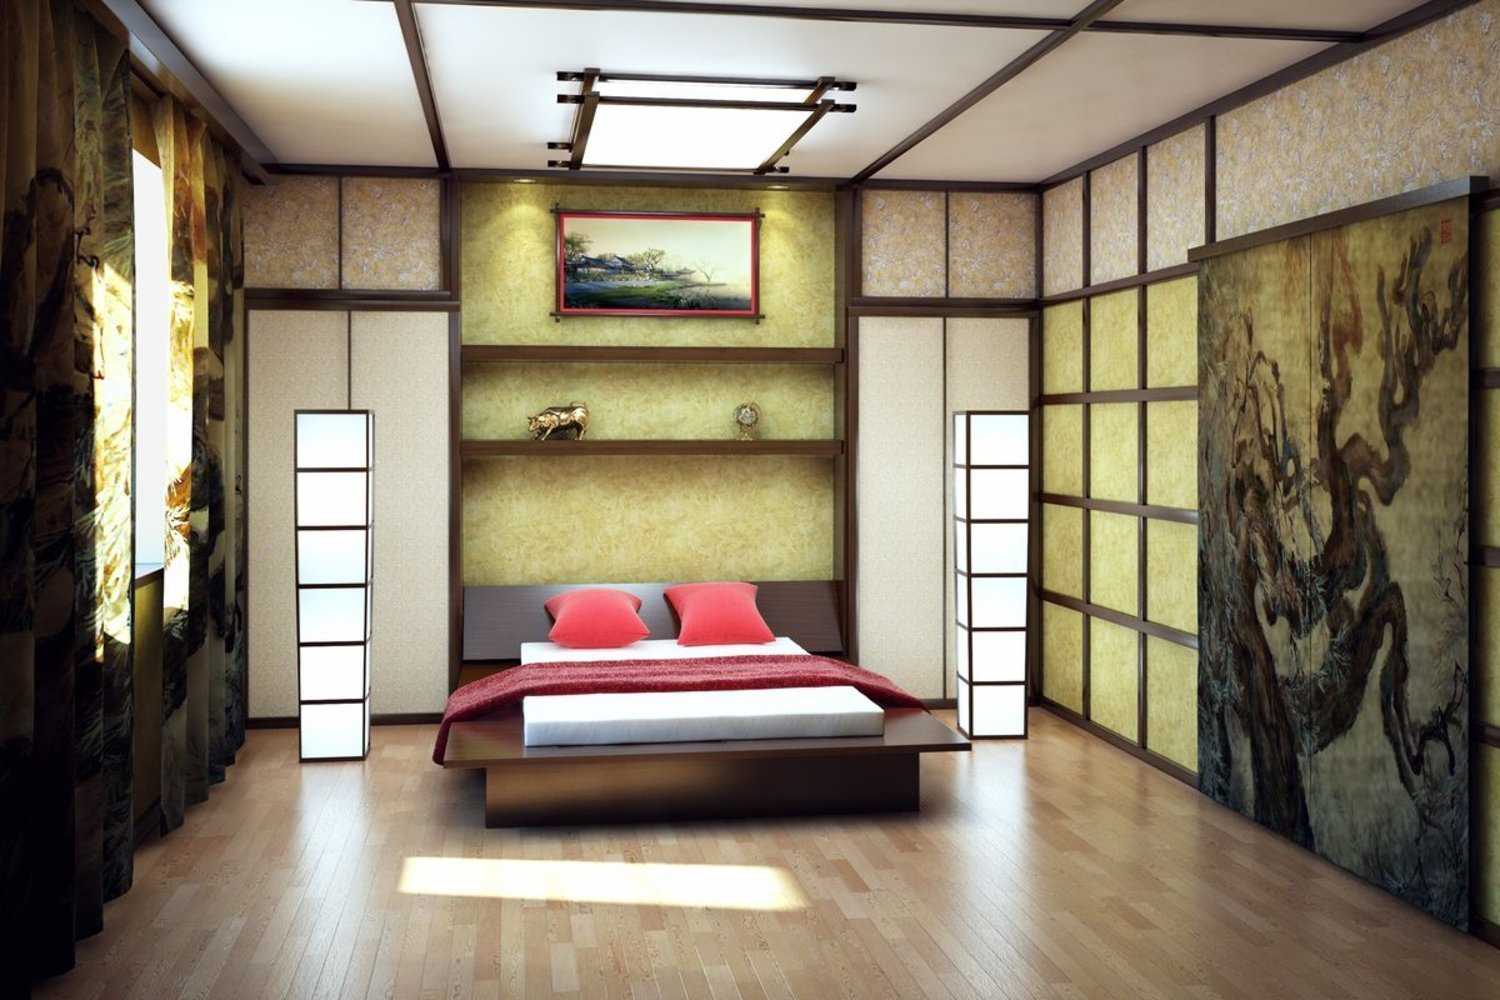 Комната в японском стиле варианты дизайна комнат различного назначения Выбор отделочных материалов, мебели и цветовой палитры Примеры оформления детских комнат